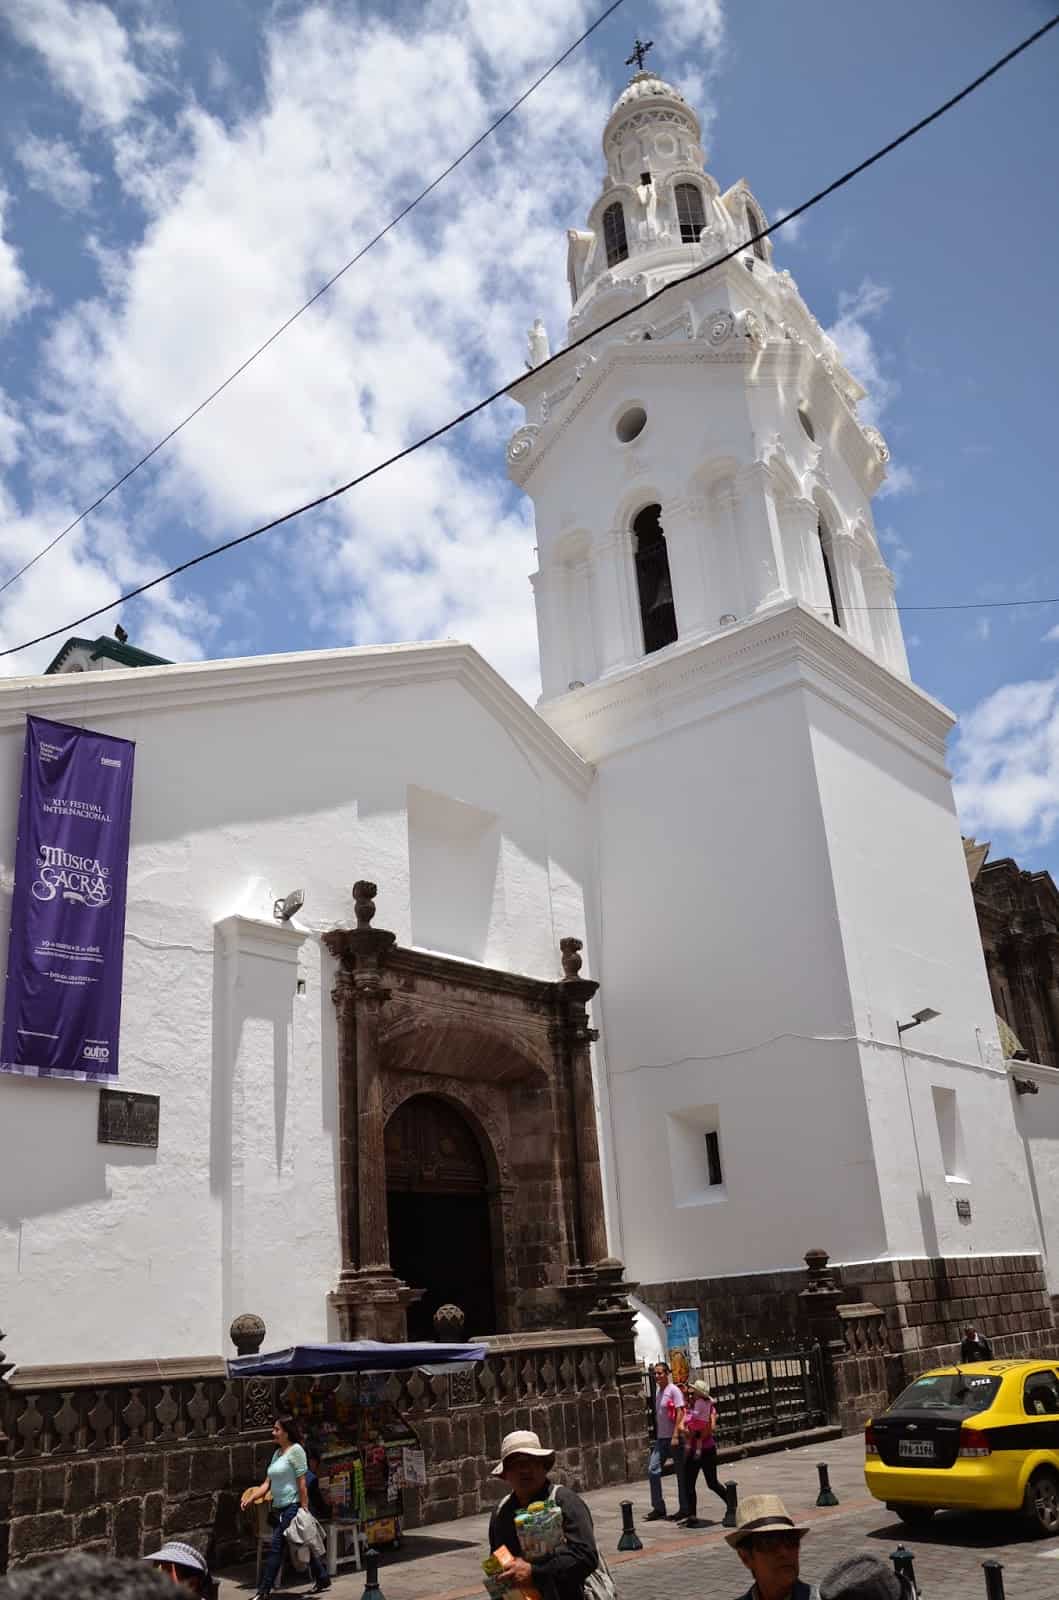 Church of the Sanctuary in Quito, Ecuador